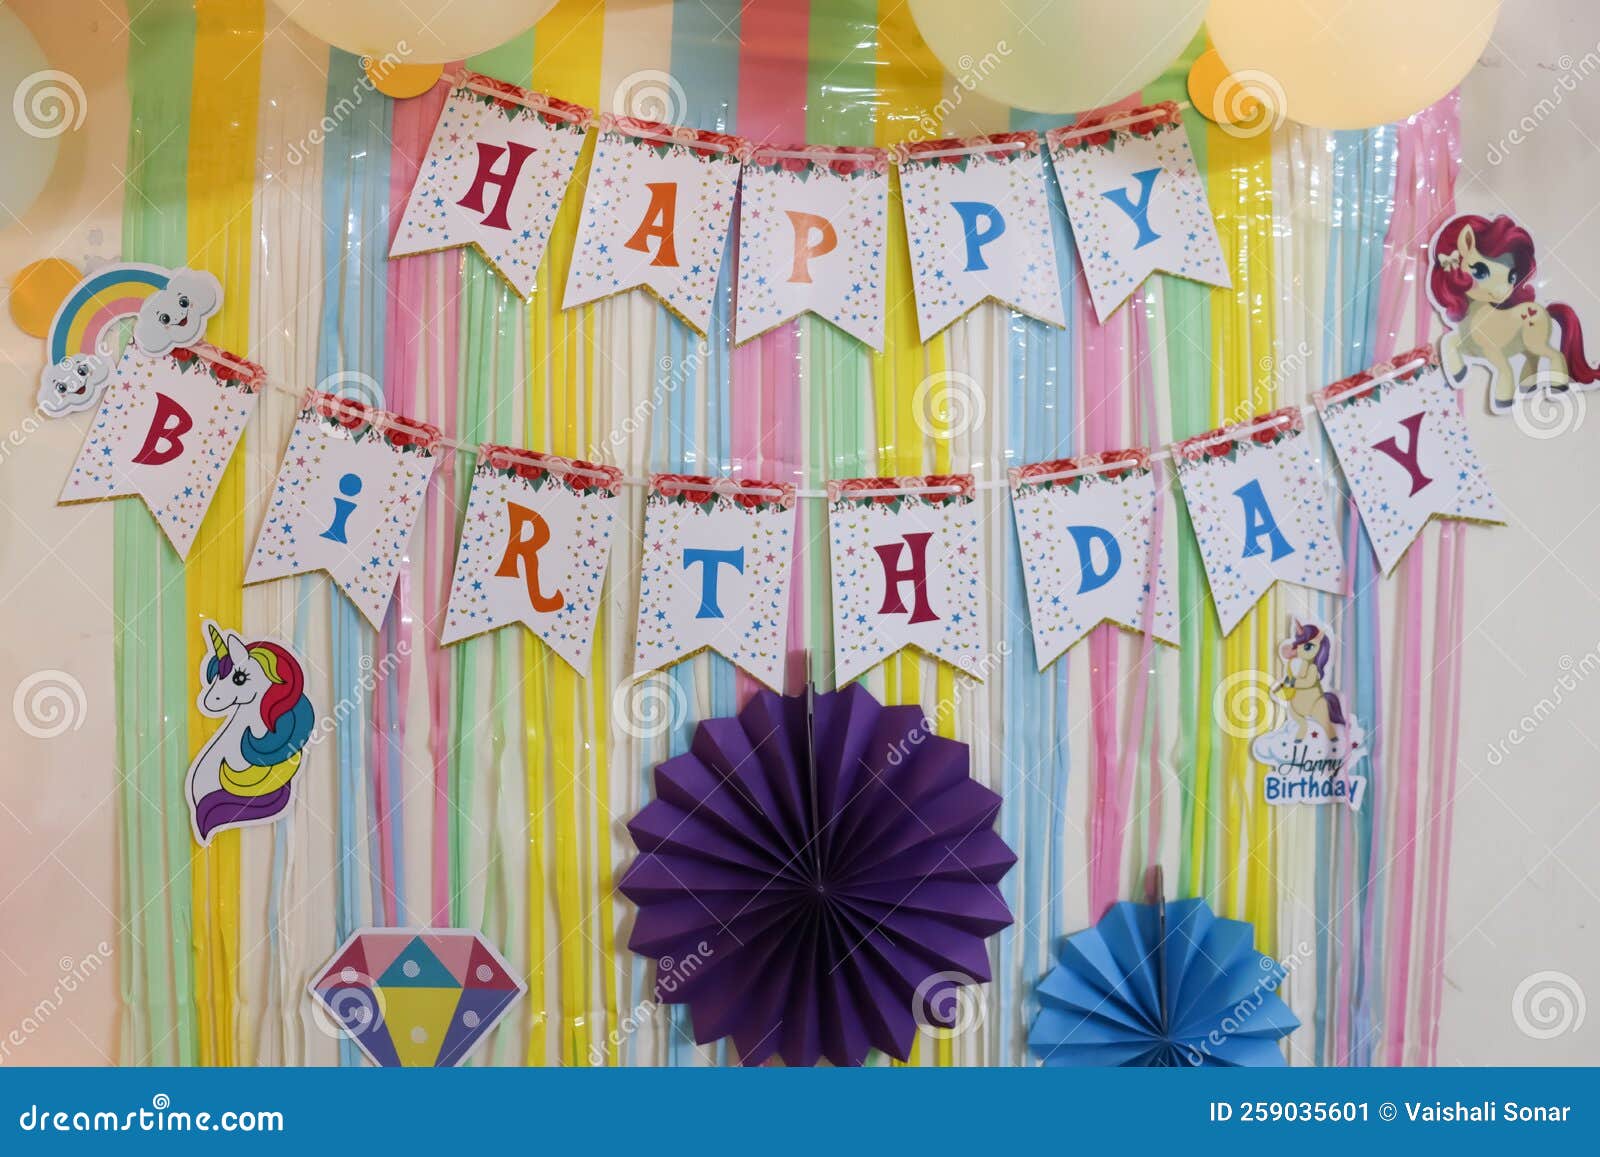 Idea Colorida De Decoración De Cumpleaños Para La Niña Imagen de archivo -  Imagen de regalo, casero: 259035601